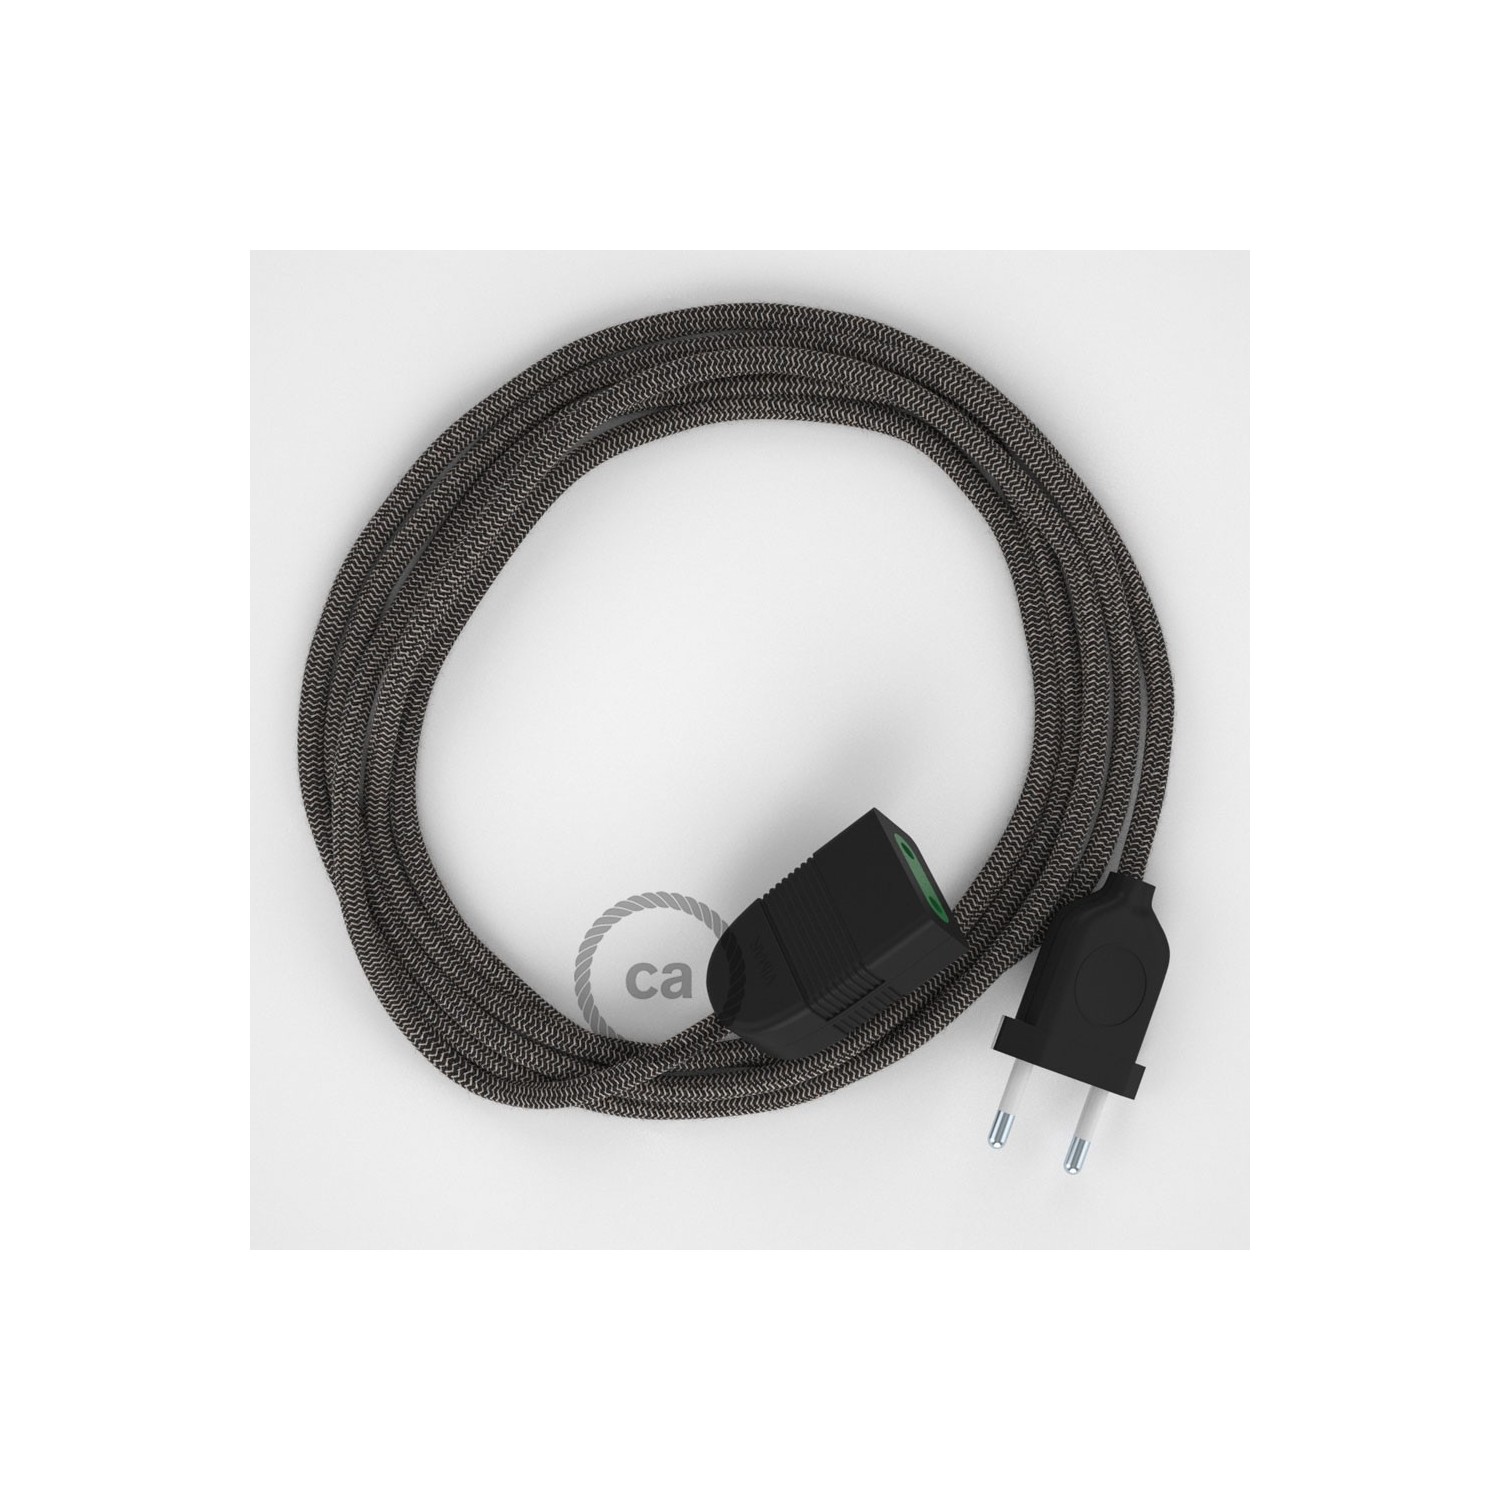 Podaljševalni kabel za napajanje (2P 10A) zigzag, antracit naravni lan in bombaž RD74 - Made in Italy